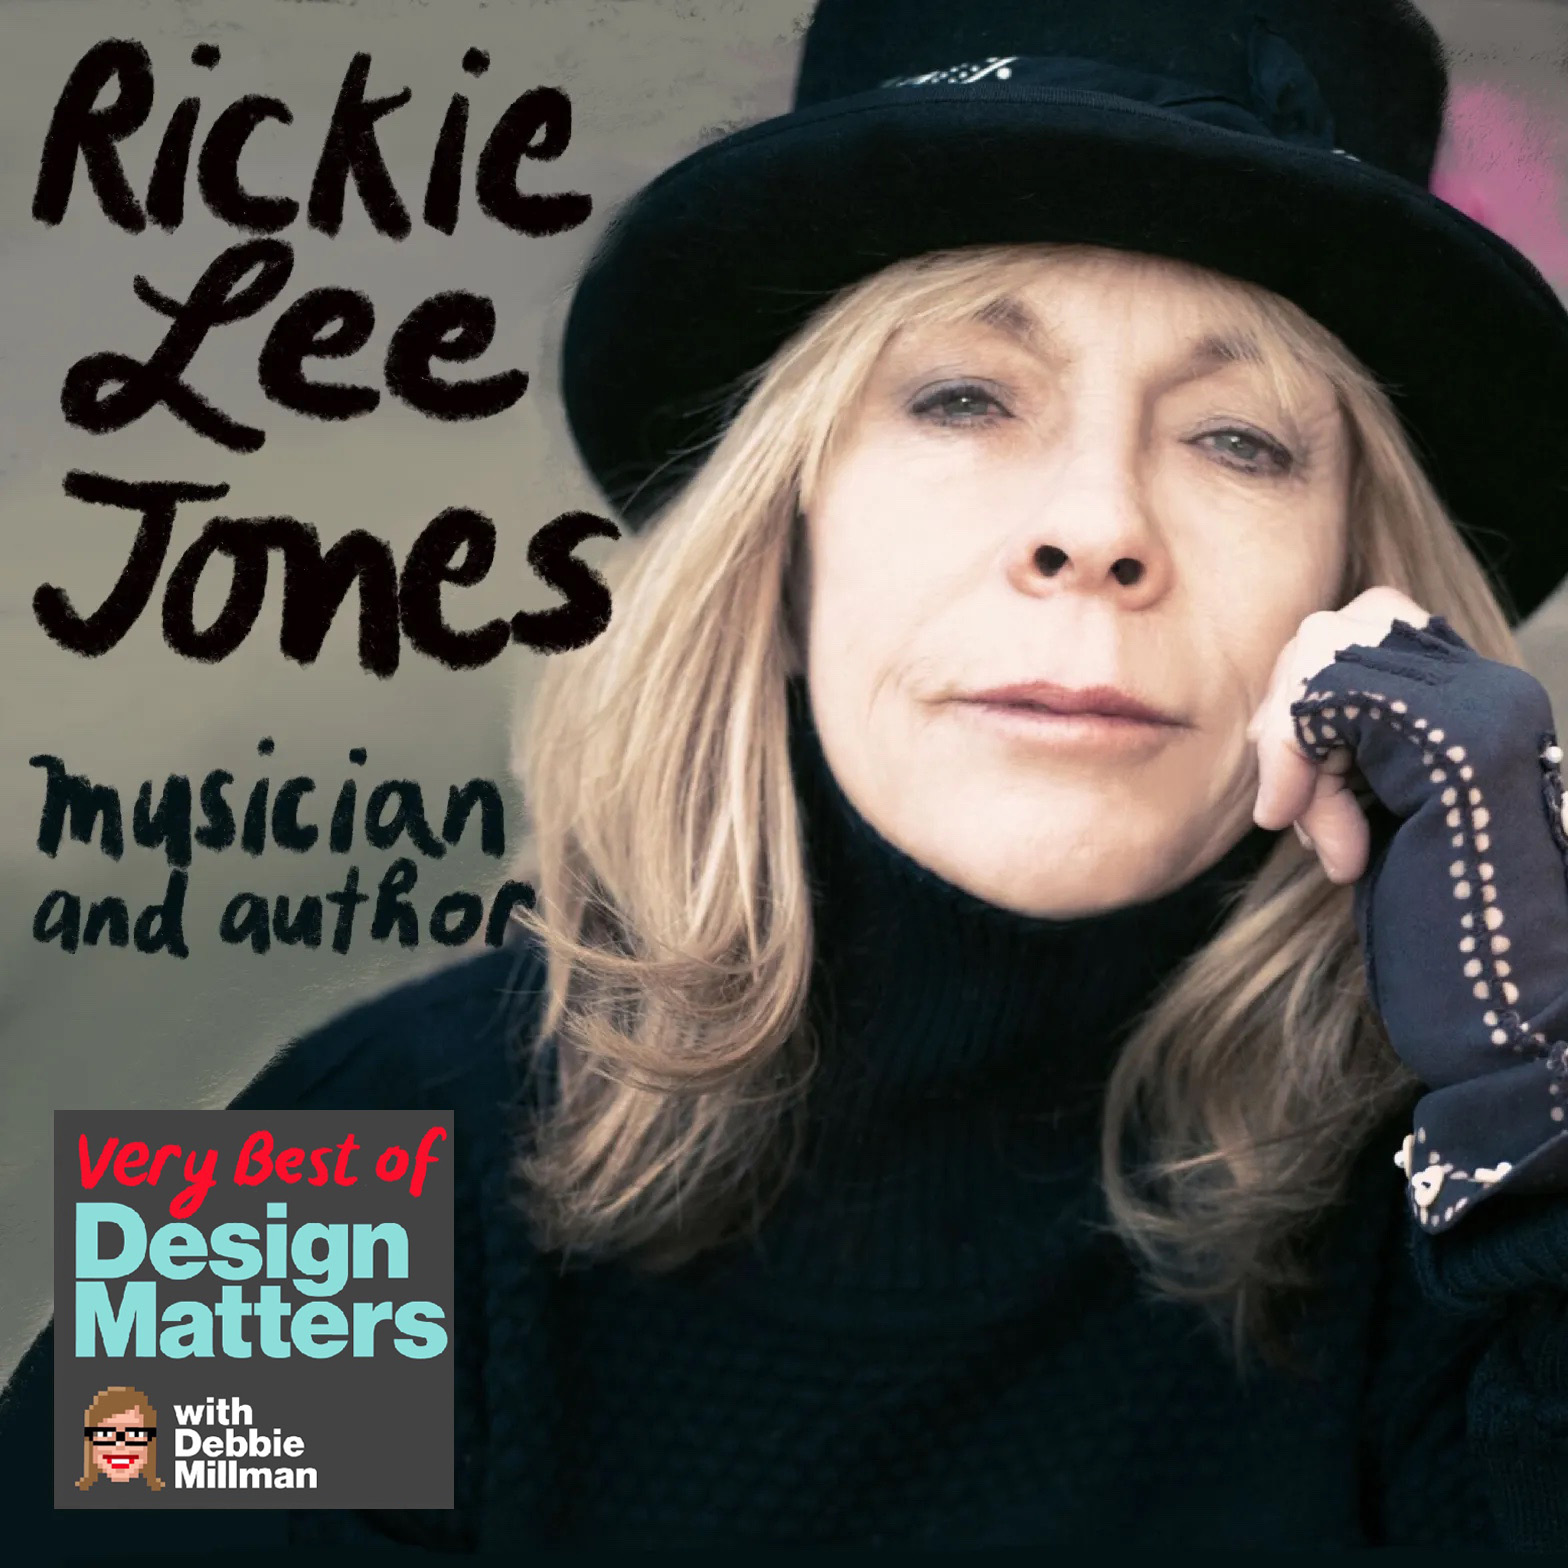 Best of Design Matters: Rickie Lee Jones